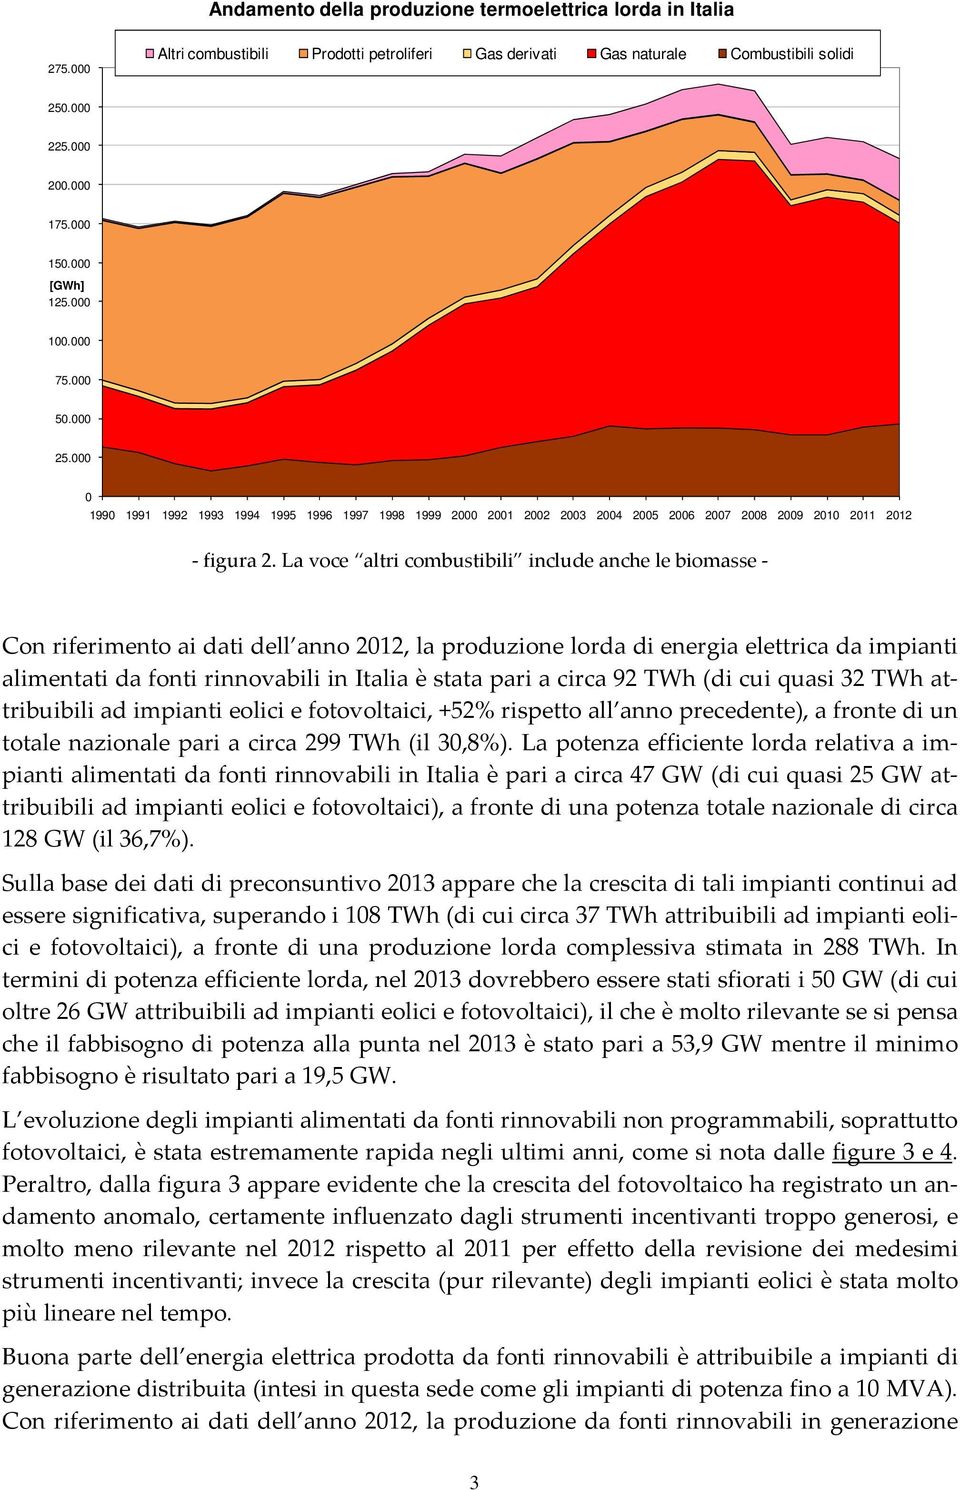 La voce altri combustibili include anche le biomasse Con riferimento ai dati dell anno 2012, la produzione lorda di energia elettrica da impianti alimentati da fonti rinnovabili in Italia è stata